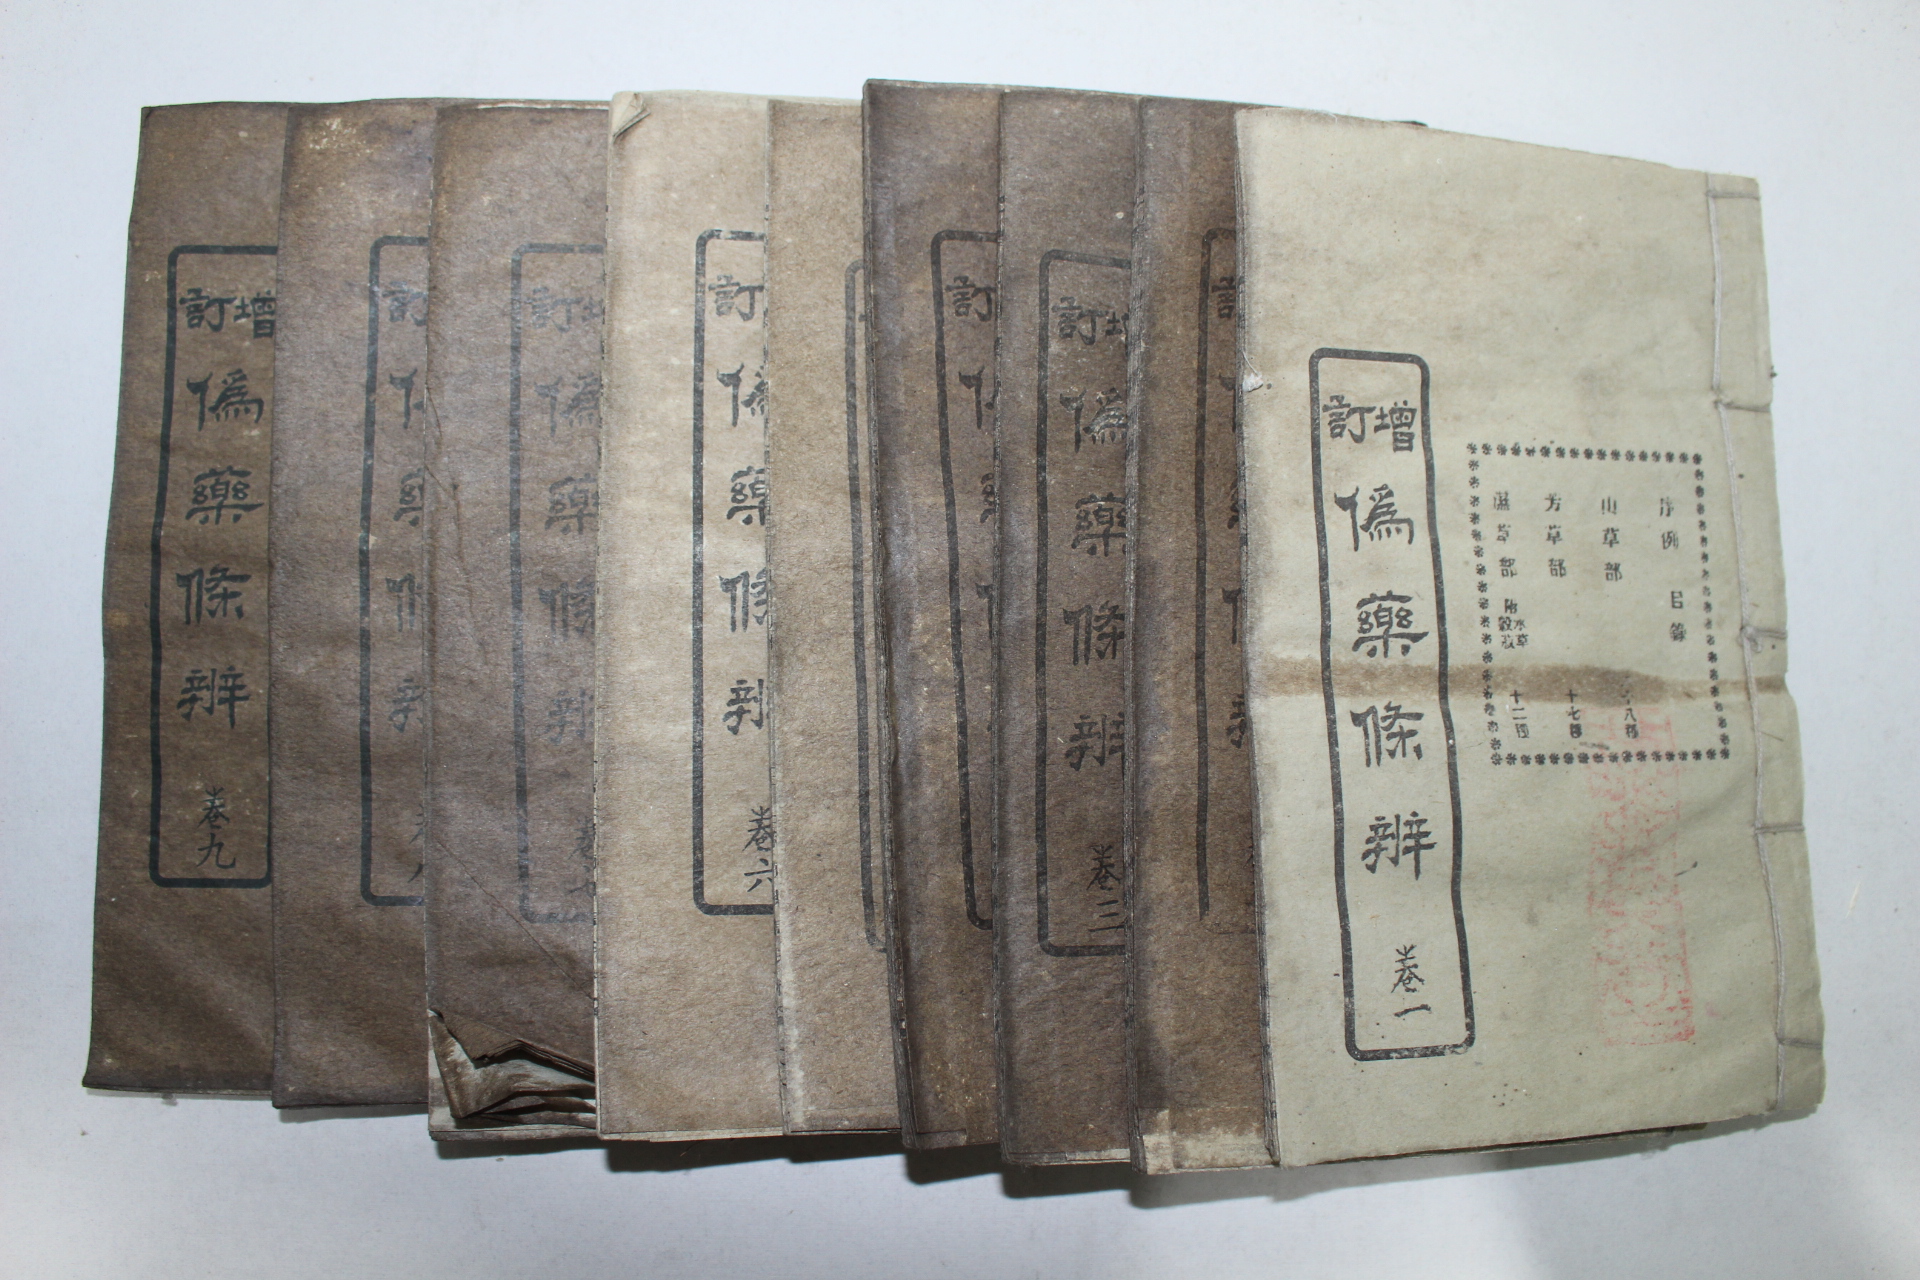 중국석판본 의서 증정위약수변(增訂僞藥修辨) 9책완질